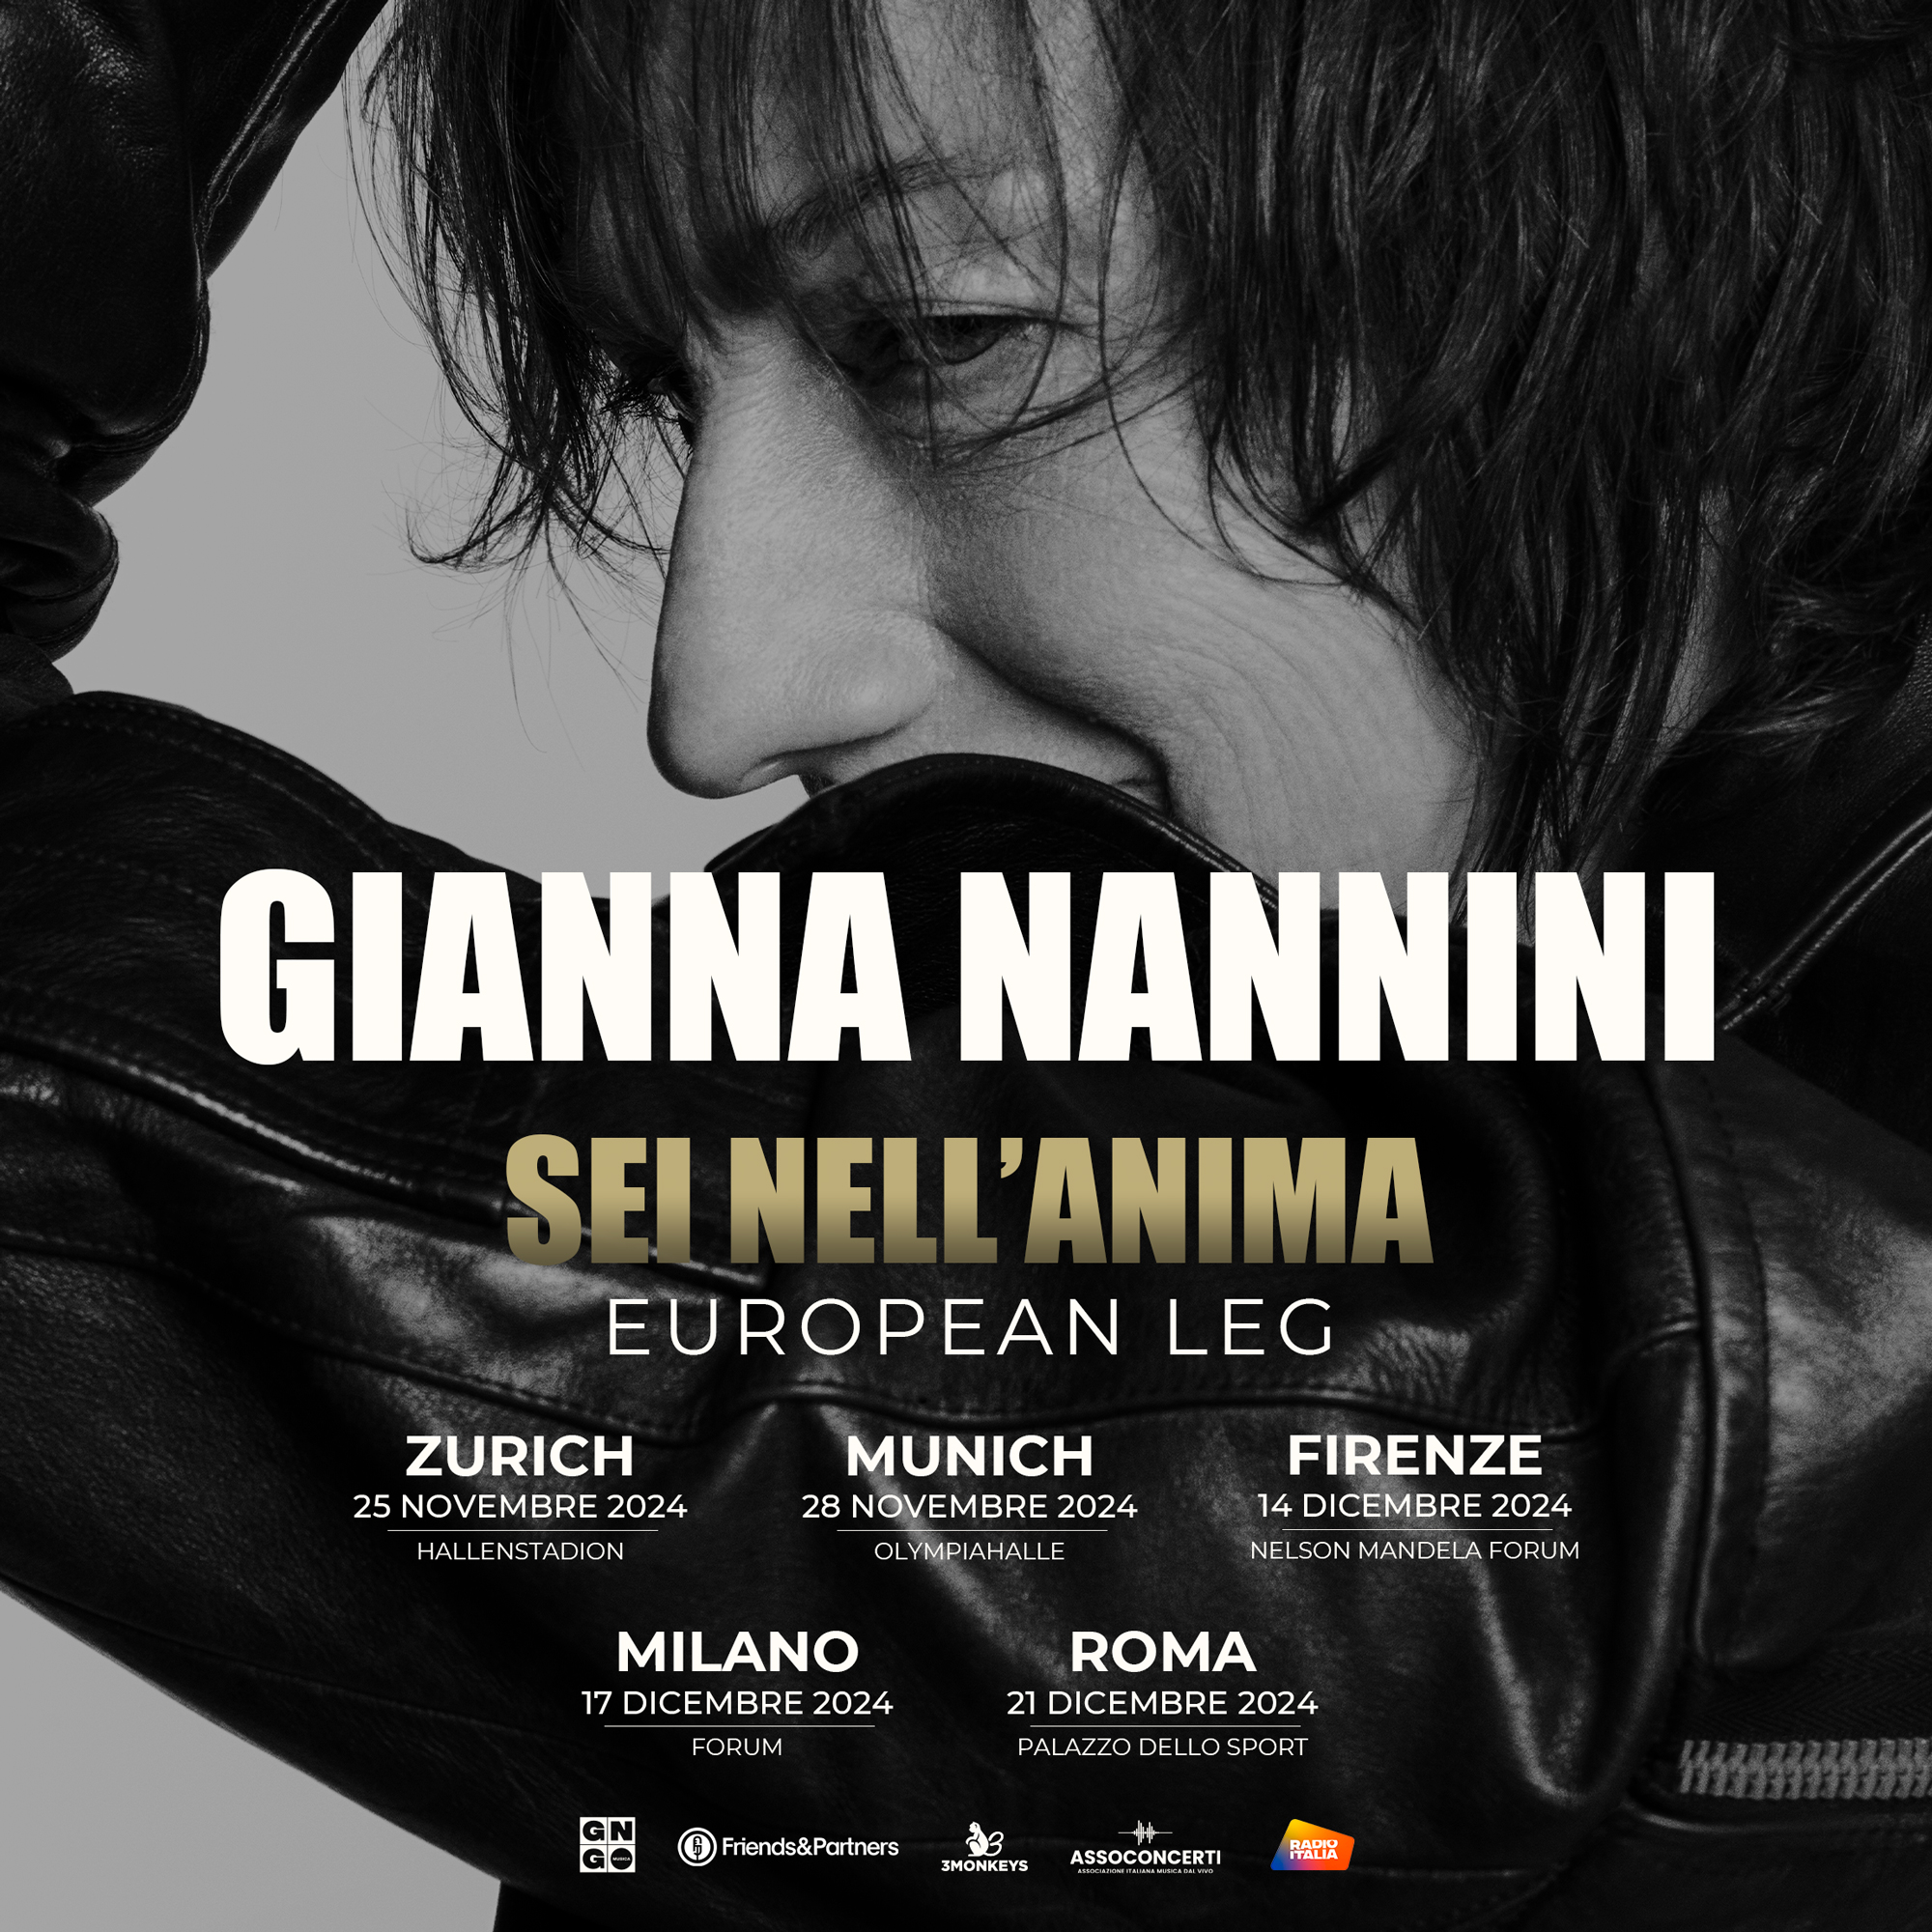 Gianna Nannini - Sei Nell'anima at Jahrhunderthalle Tickets